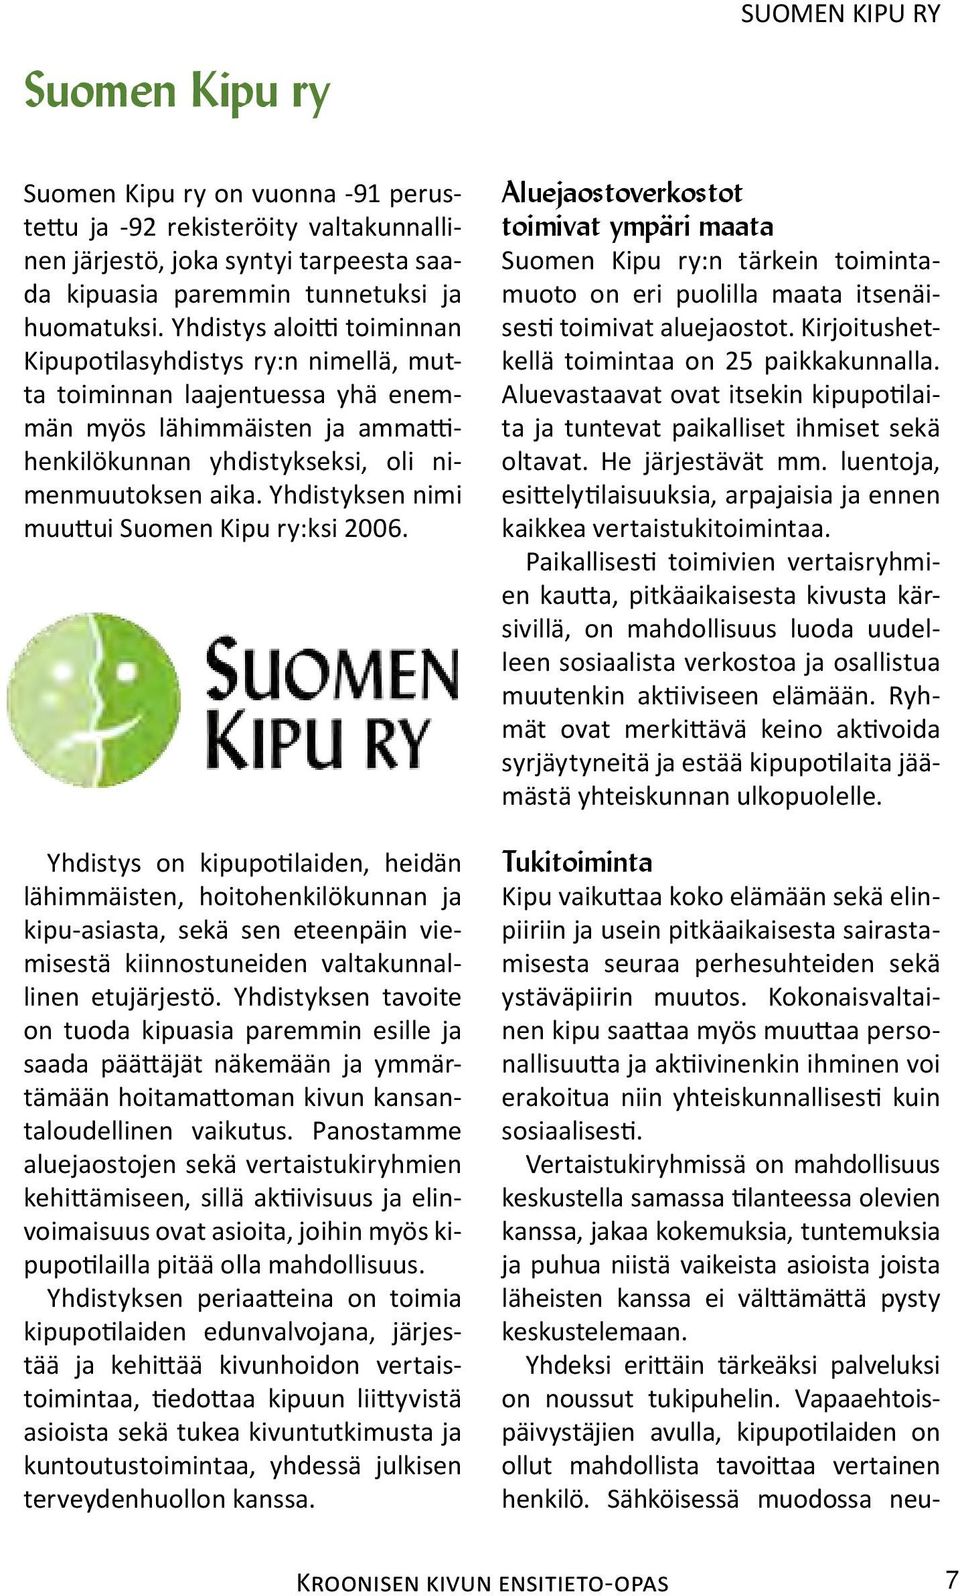 Yhdistyksen nimi muuttui Suomen Kipu ry:ksi 2006.